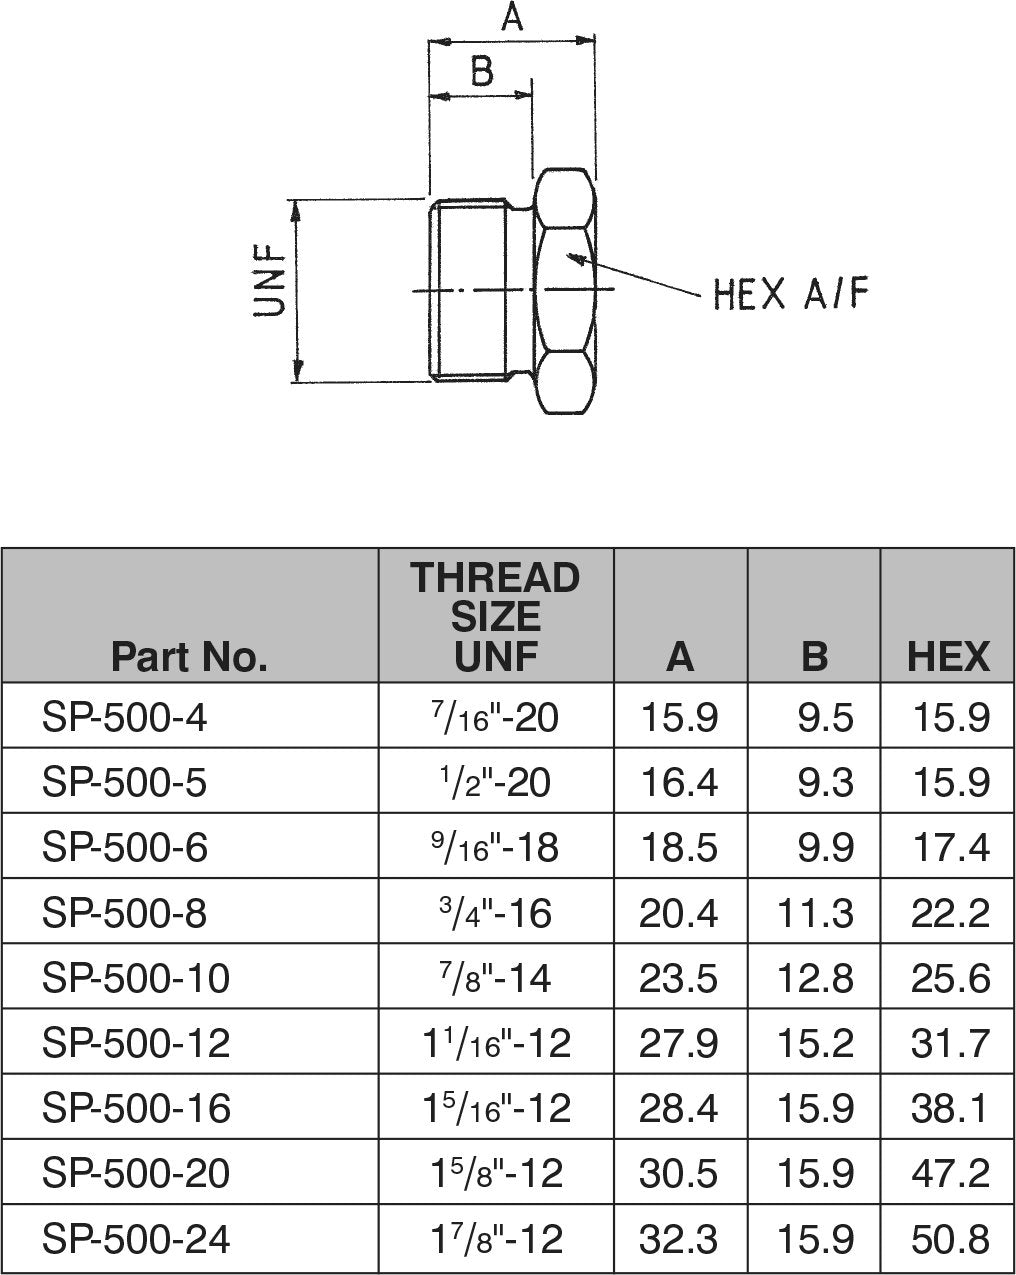 7/8"-14 SAE HEX HEAD PLUG-SP-500-10 - Custom Fittings